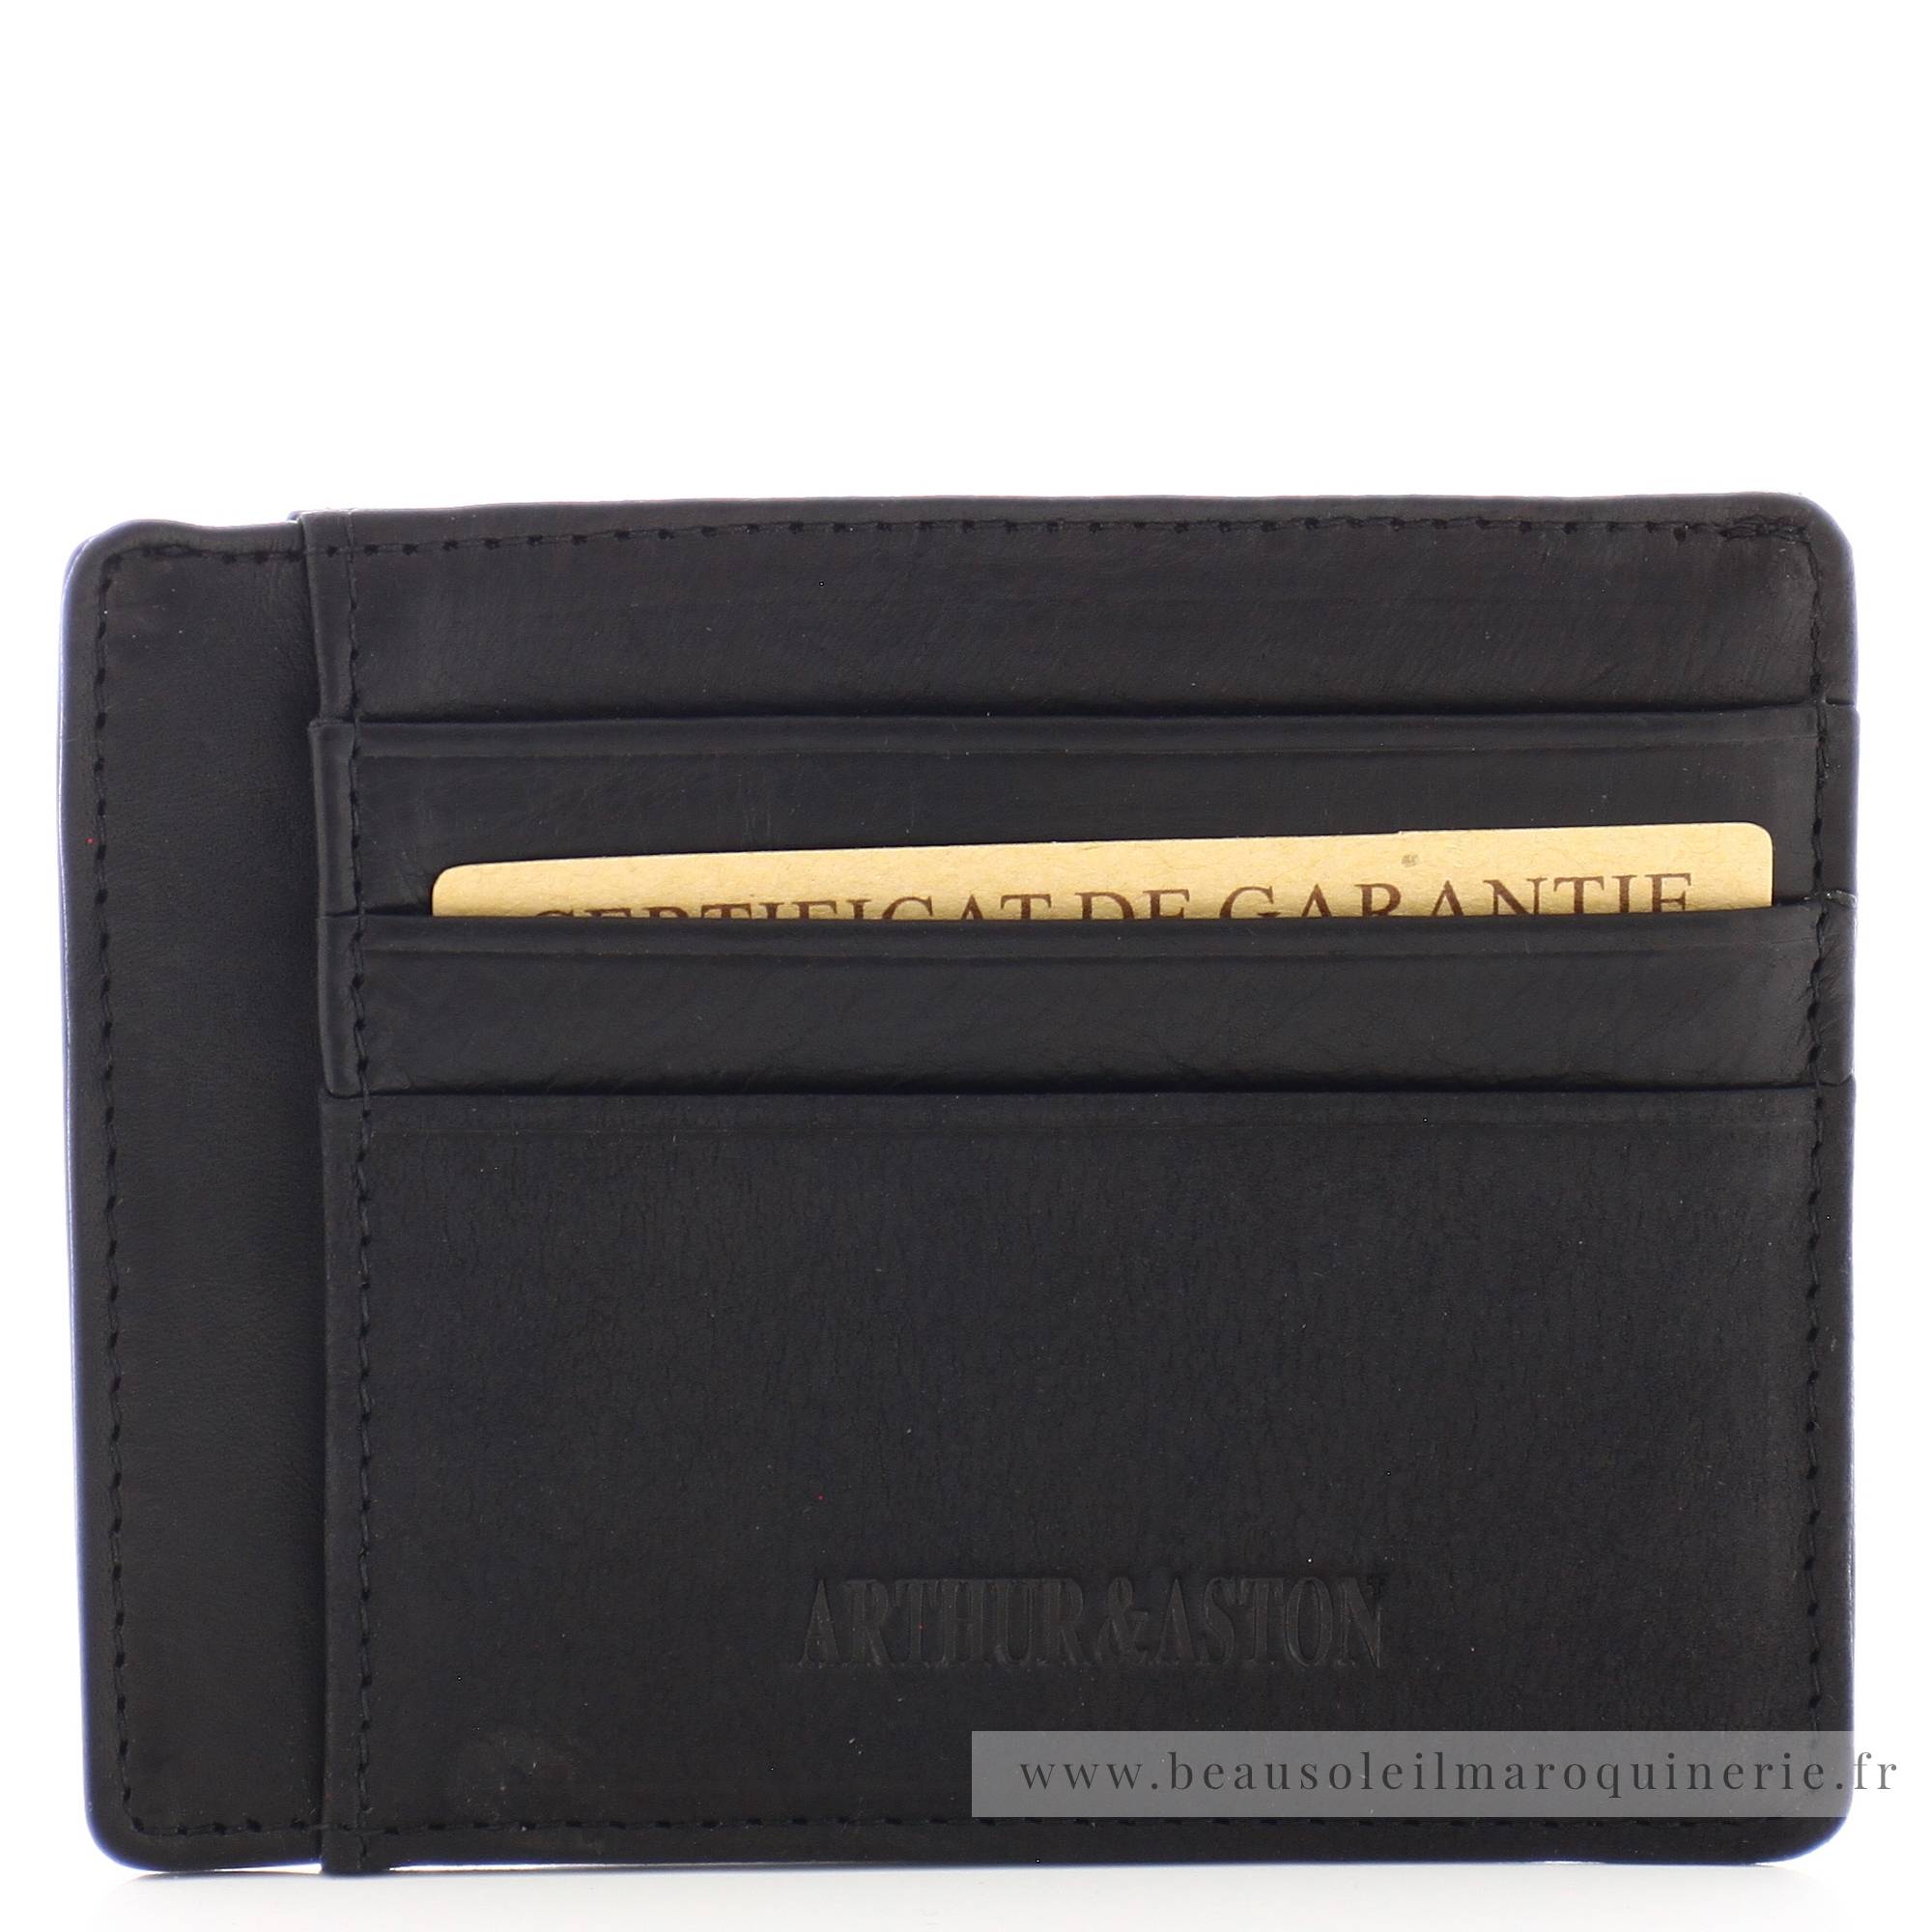 Porte cartes Arthur Aston Louis format mini cuir 94-147A couleur noir, vue de face